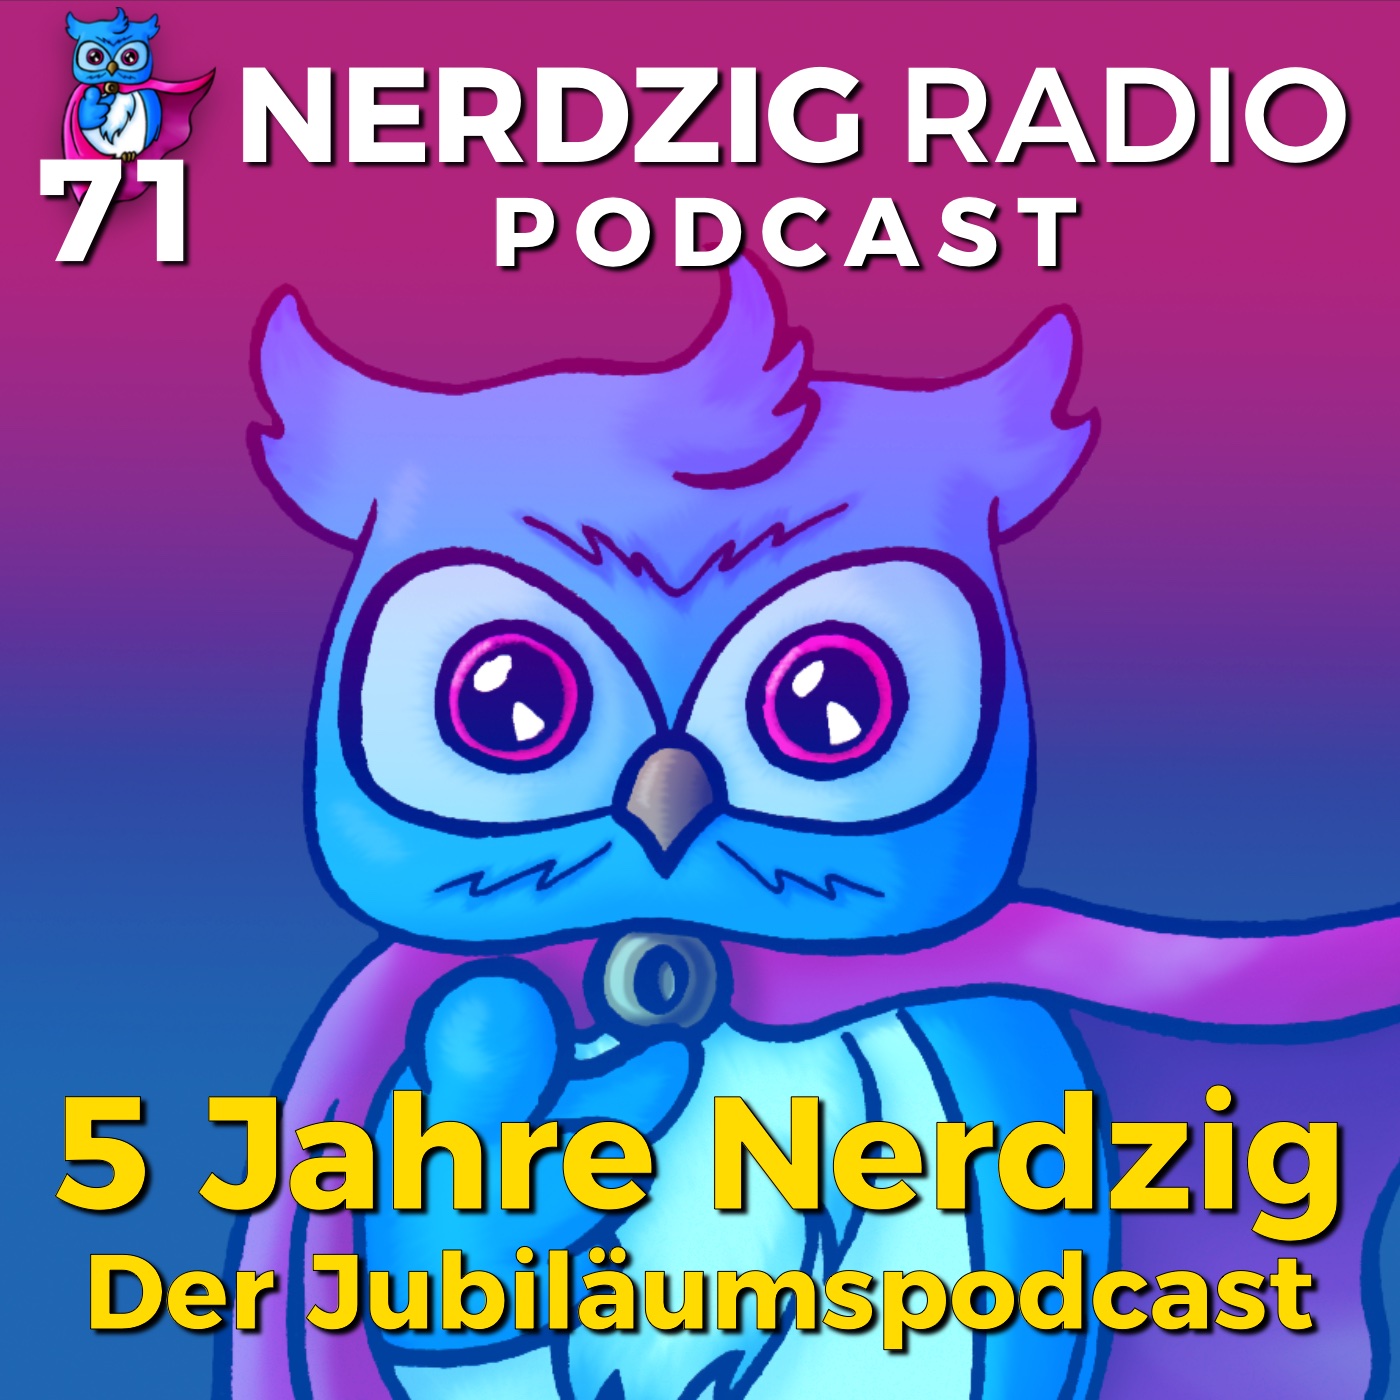 Nerdzig Radio #71 – 5 Jahre Nerdzig: Der Jubiläumspodcast